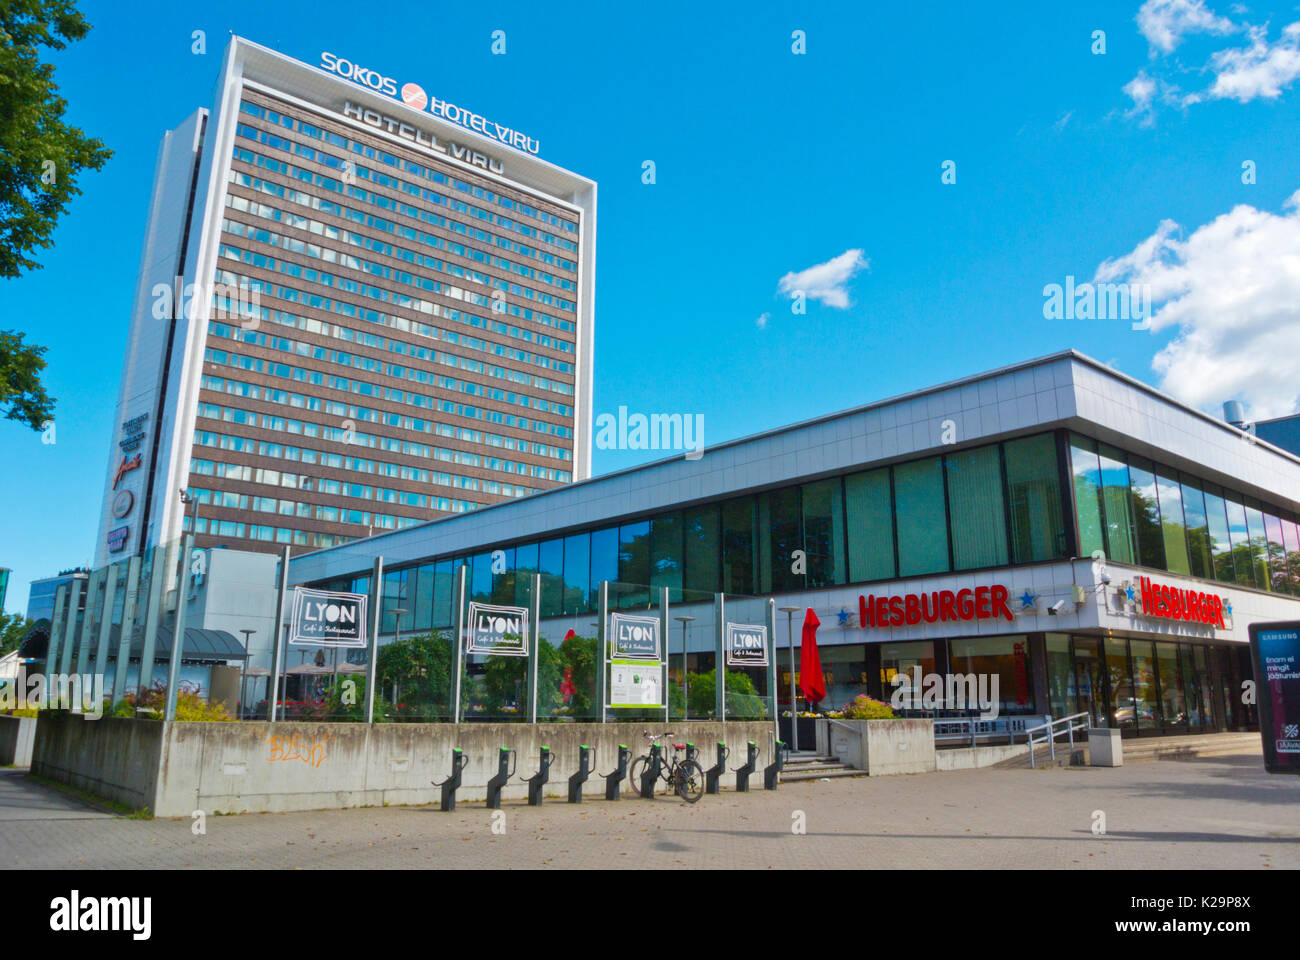 Viru Keskus, Hotell Viru, Tallinn, Estonia Stock Photo